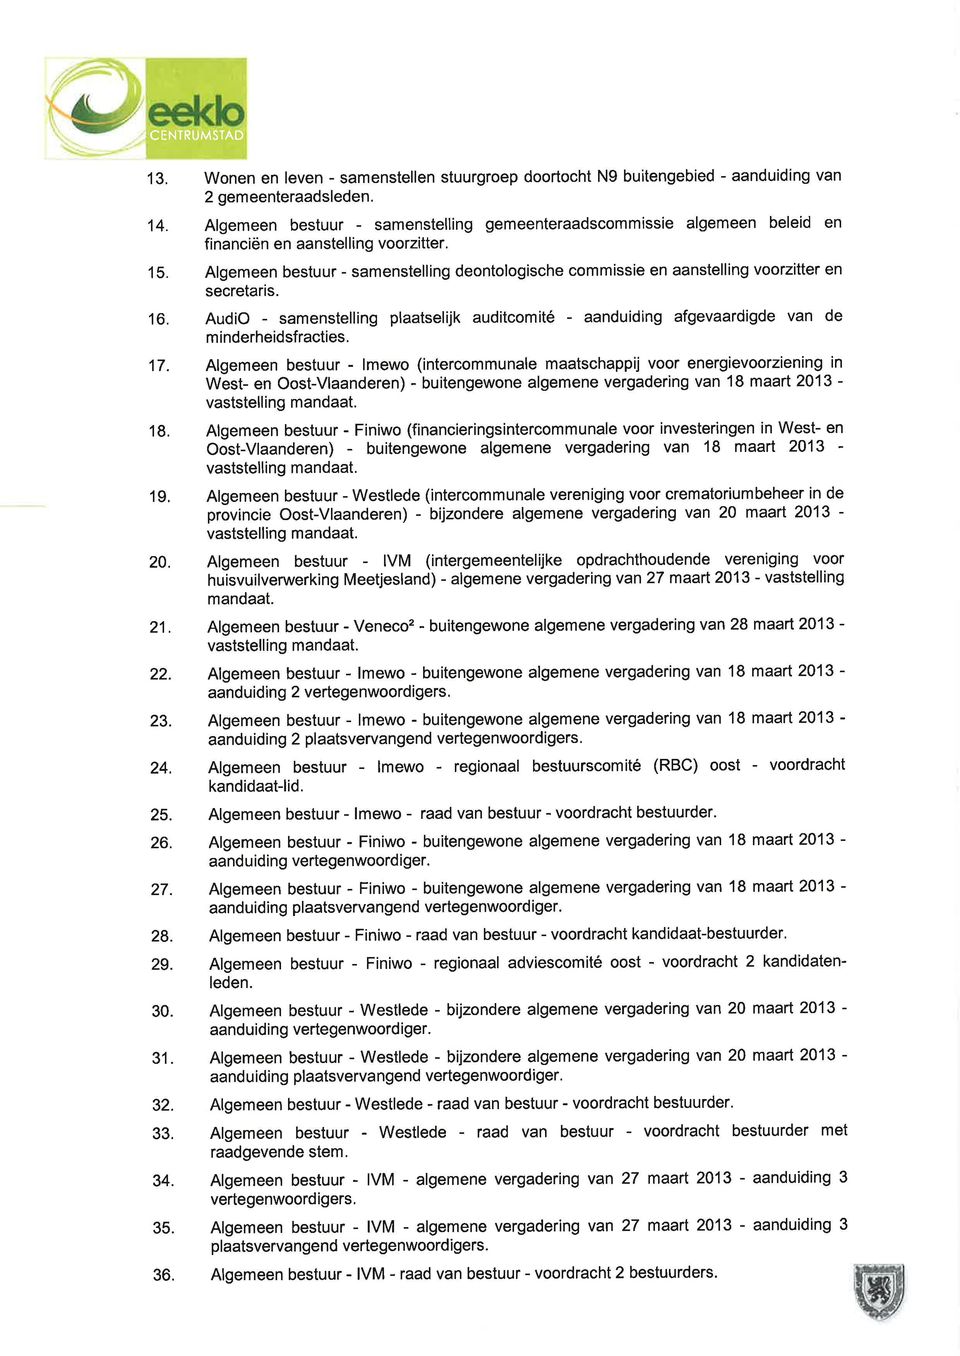 Algemeen bestuur - samenstelling deontologische commissie en aanstelling voorzitter en secretaris. 16.